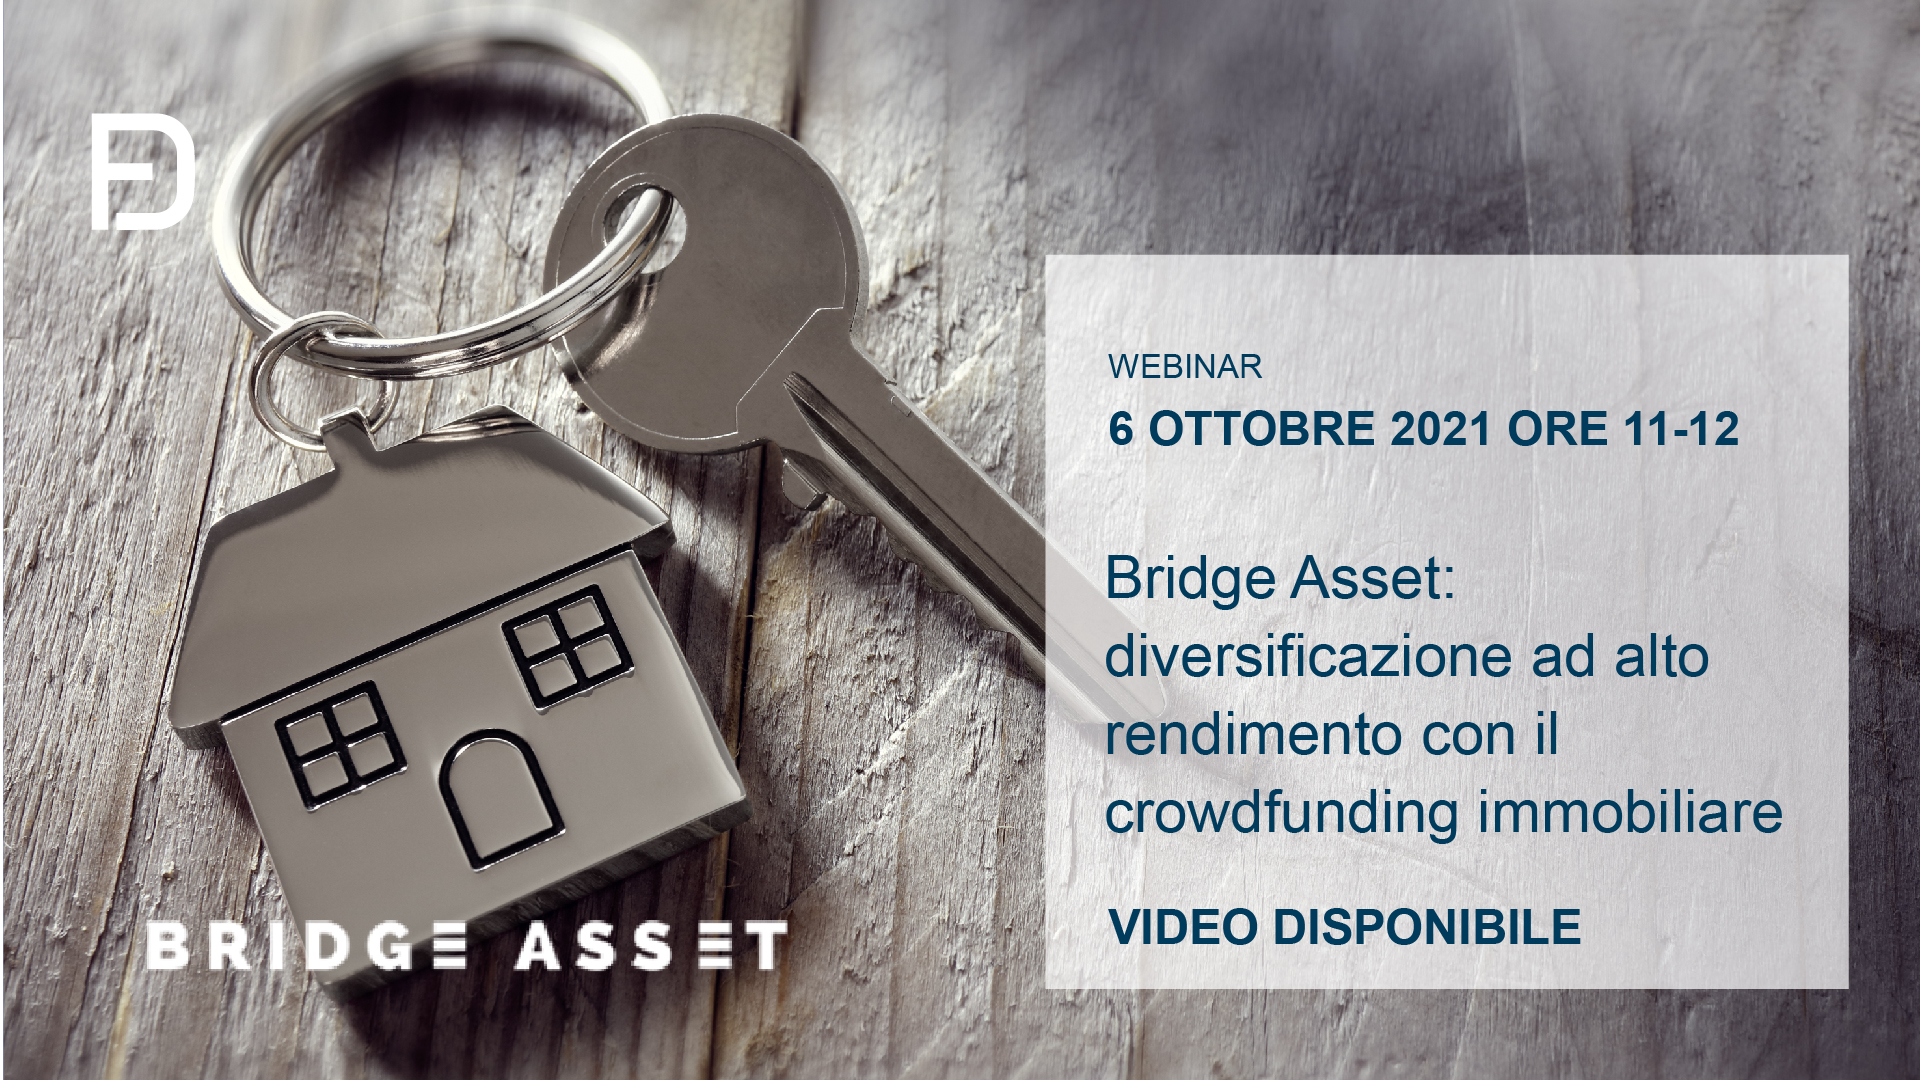 Bridge Asset: diversificazione ad alto rendimento con il crowdfunding immobiliare